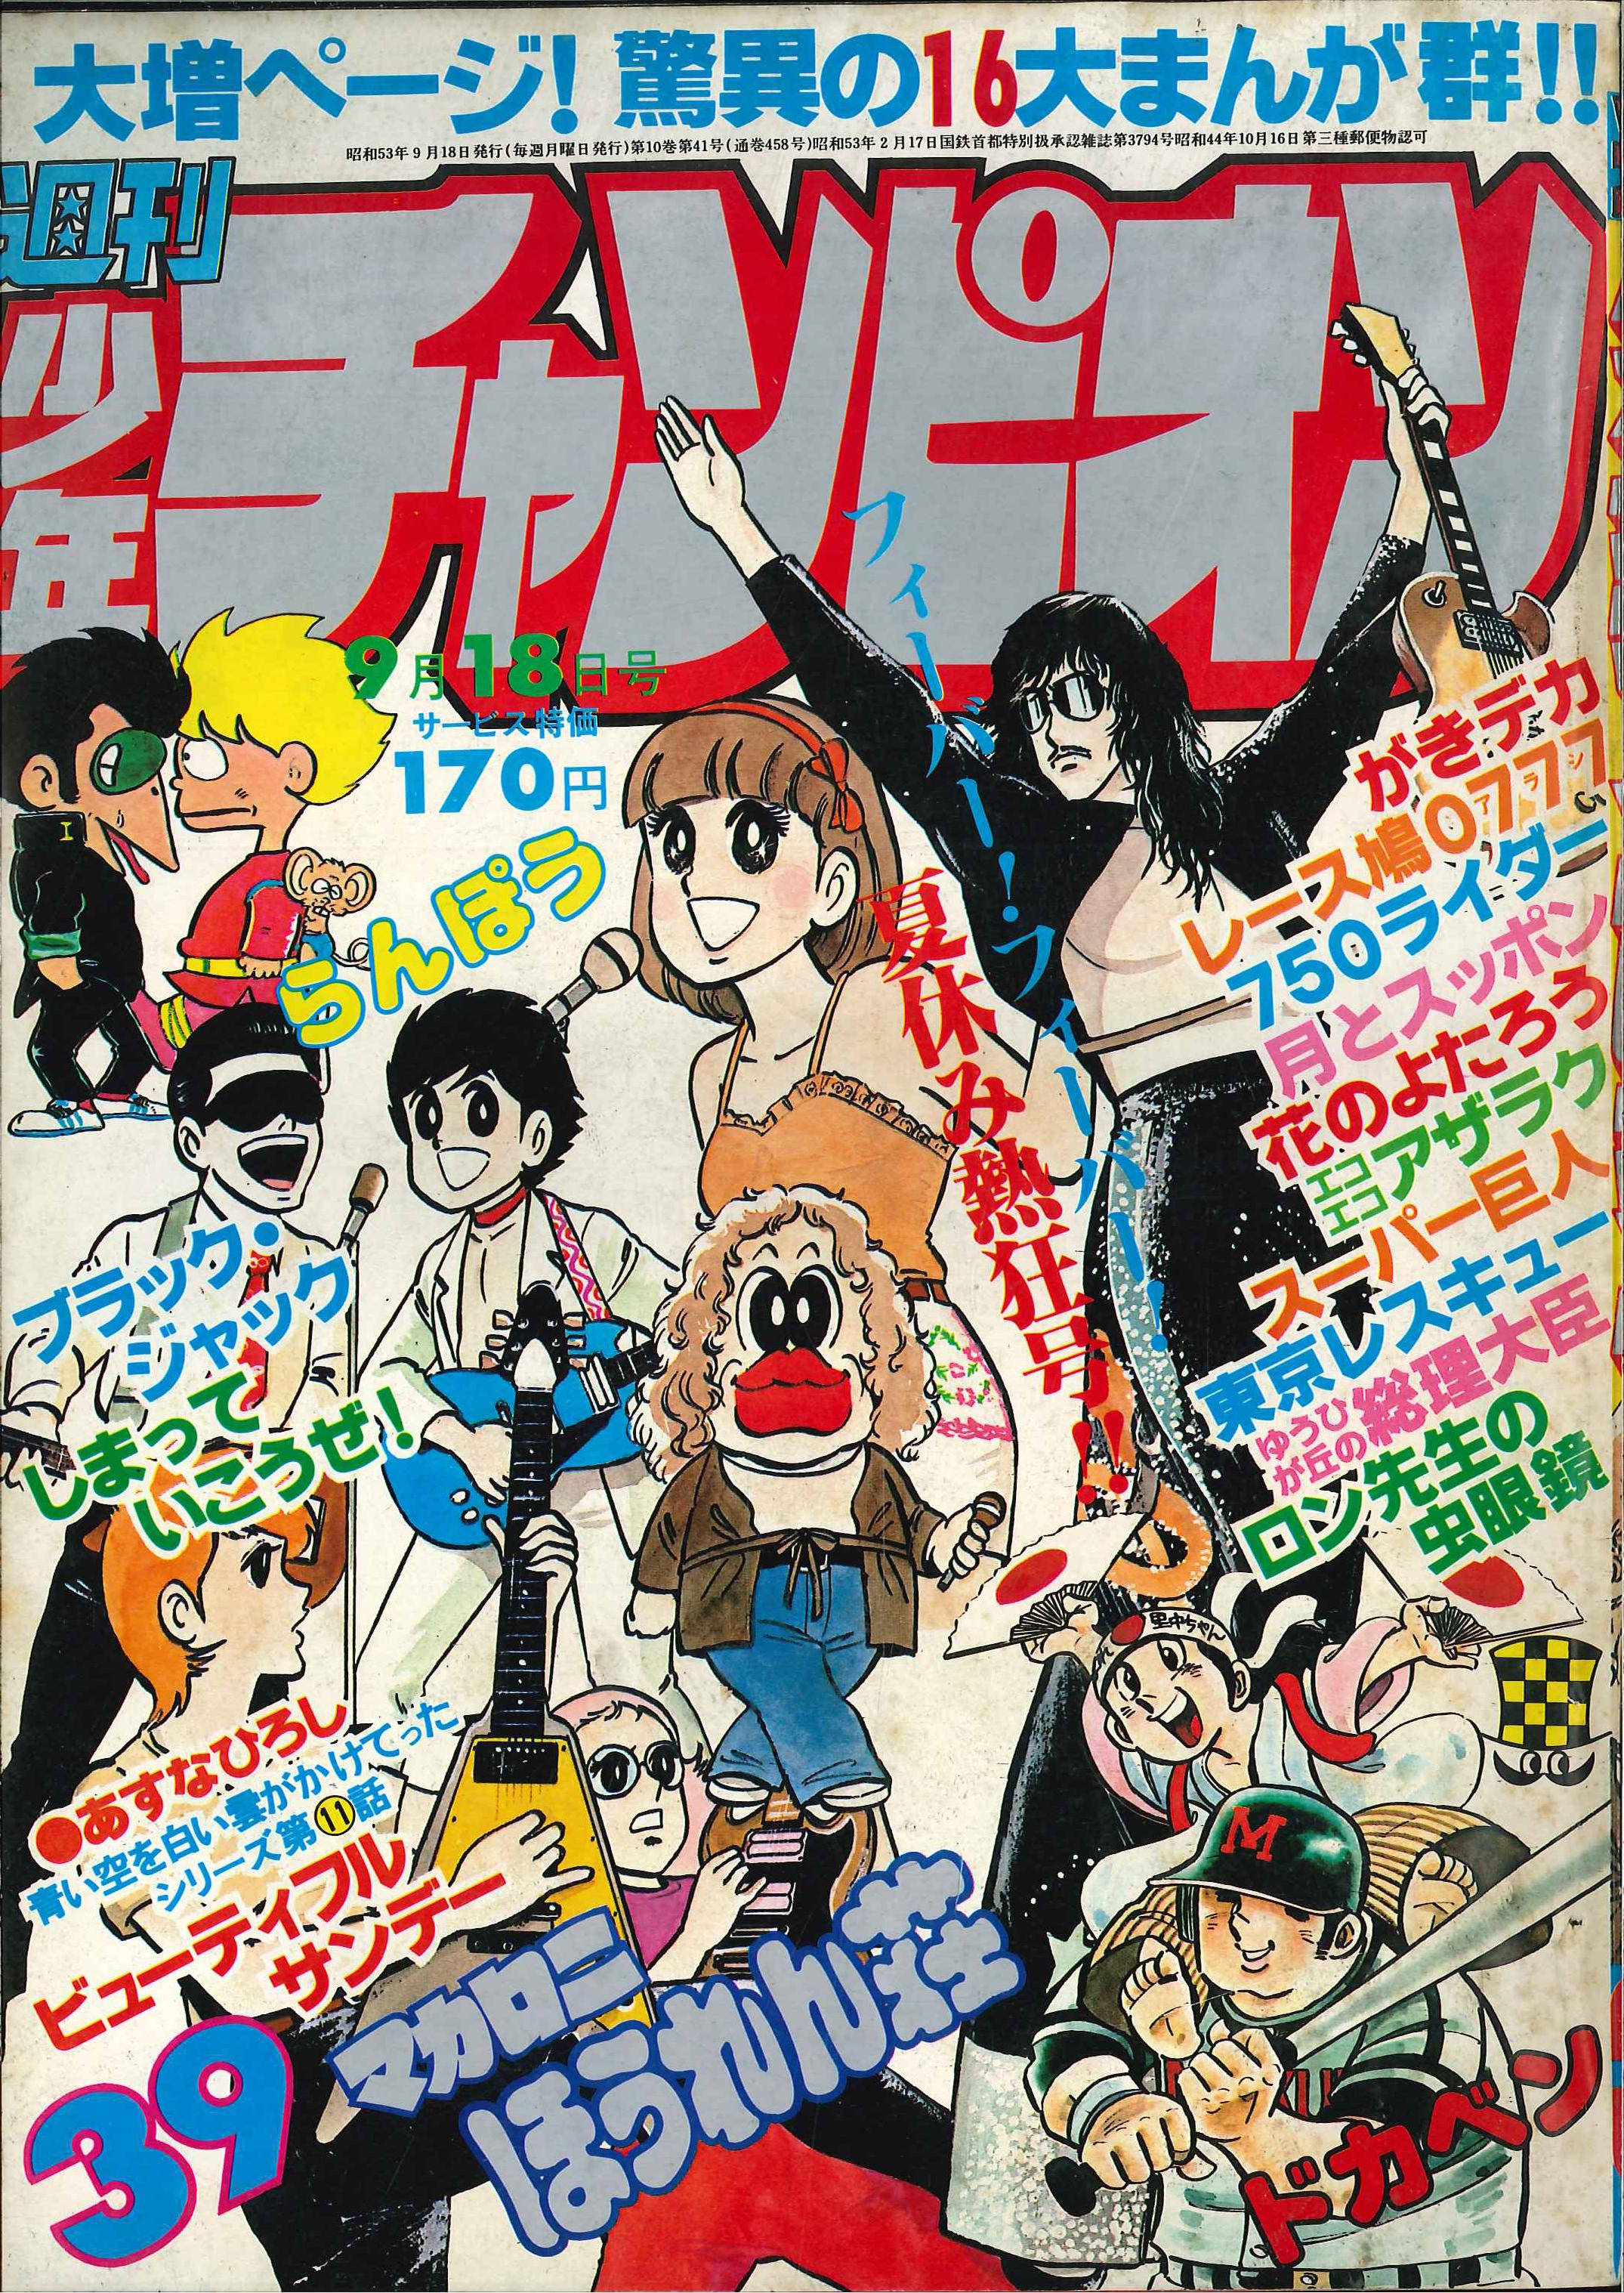 秋田書店 1978年(昭和53年)の漫画雑誌 『週刊少年チャンピオン1978年